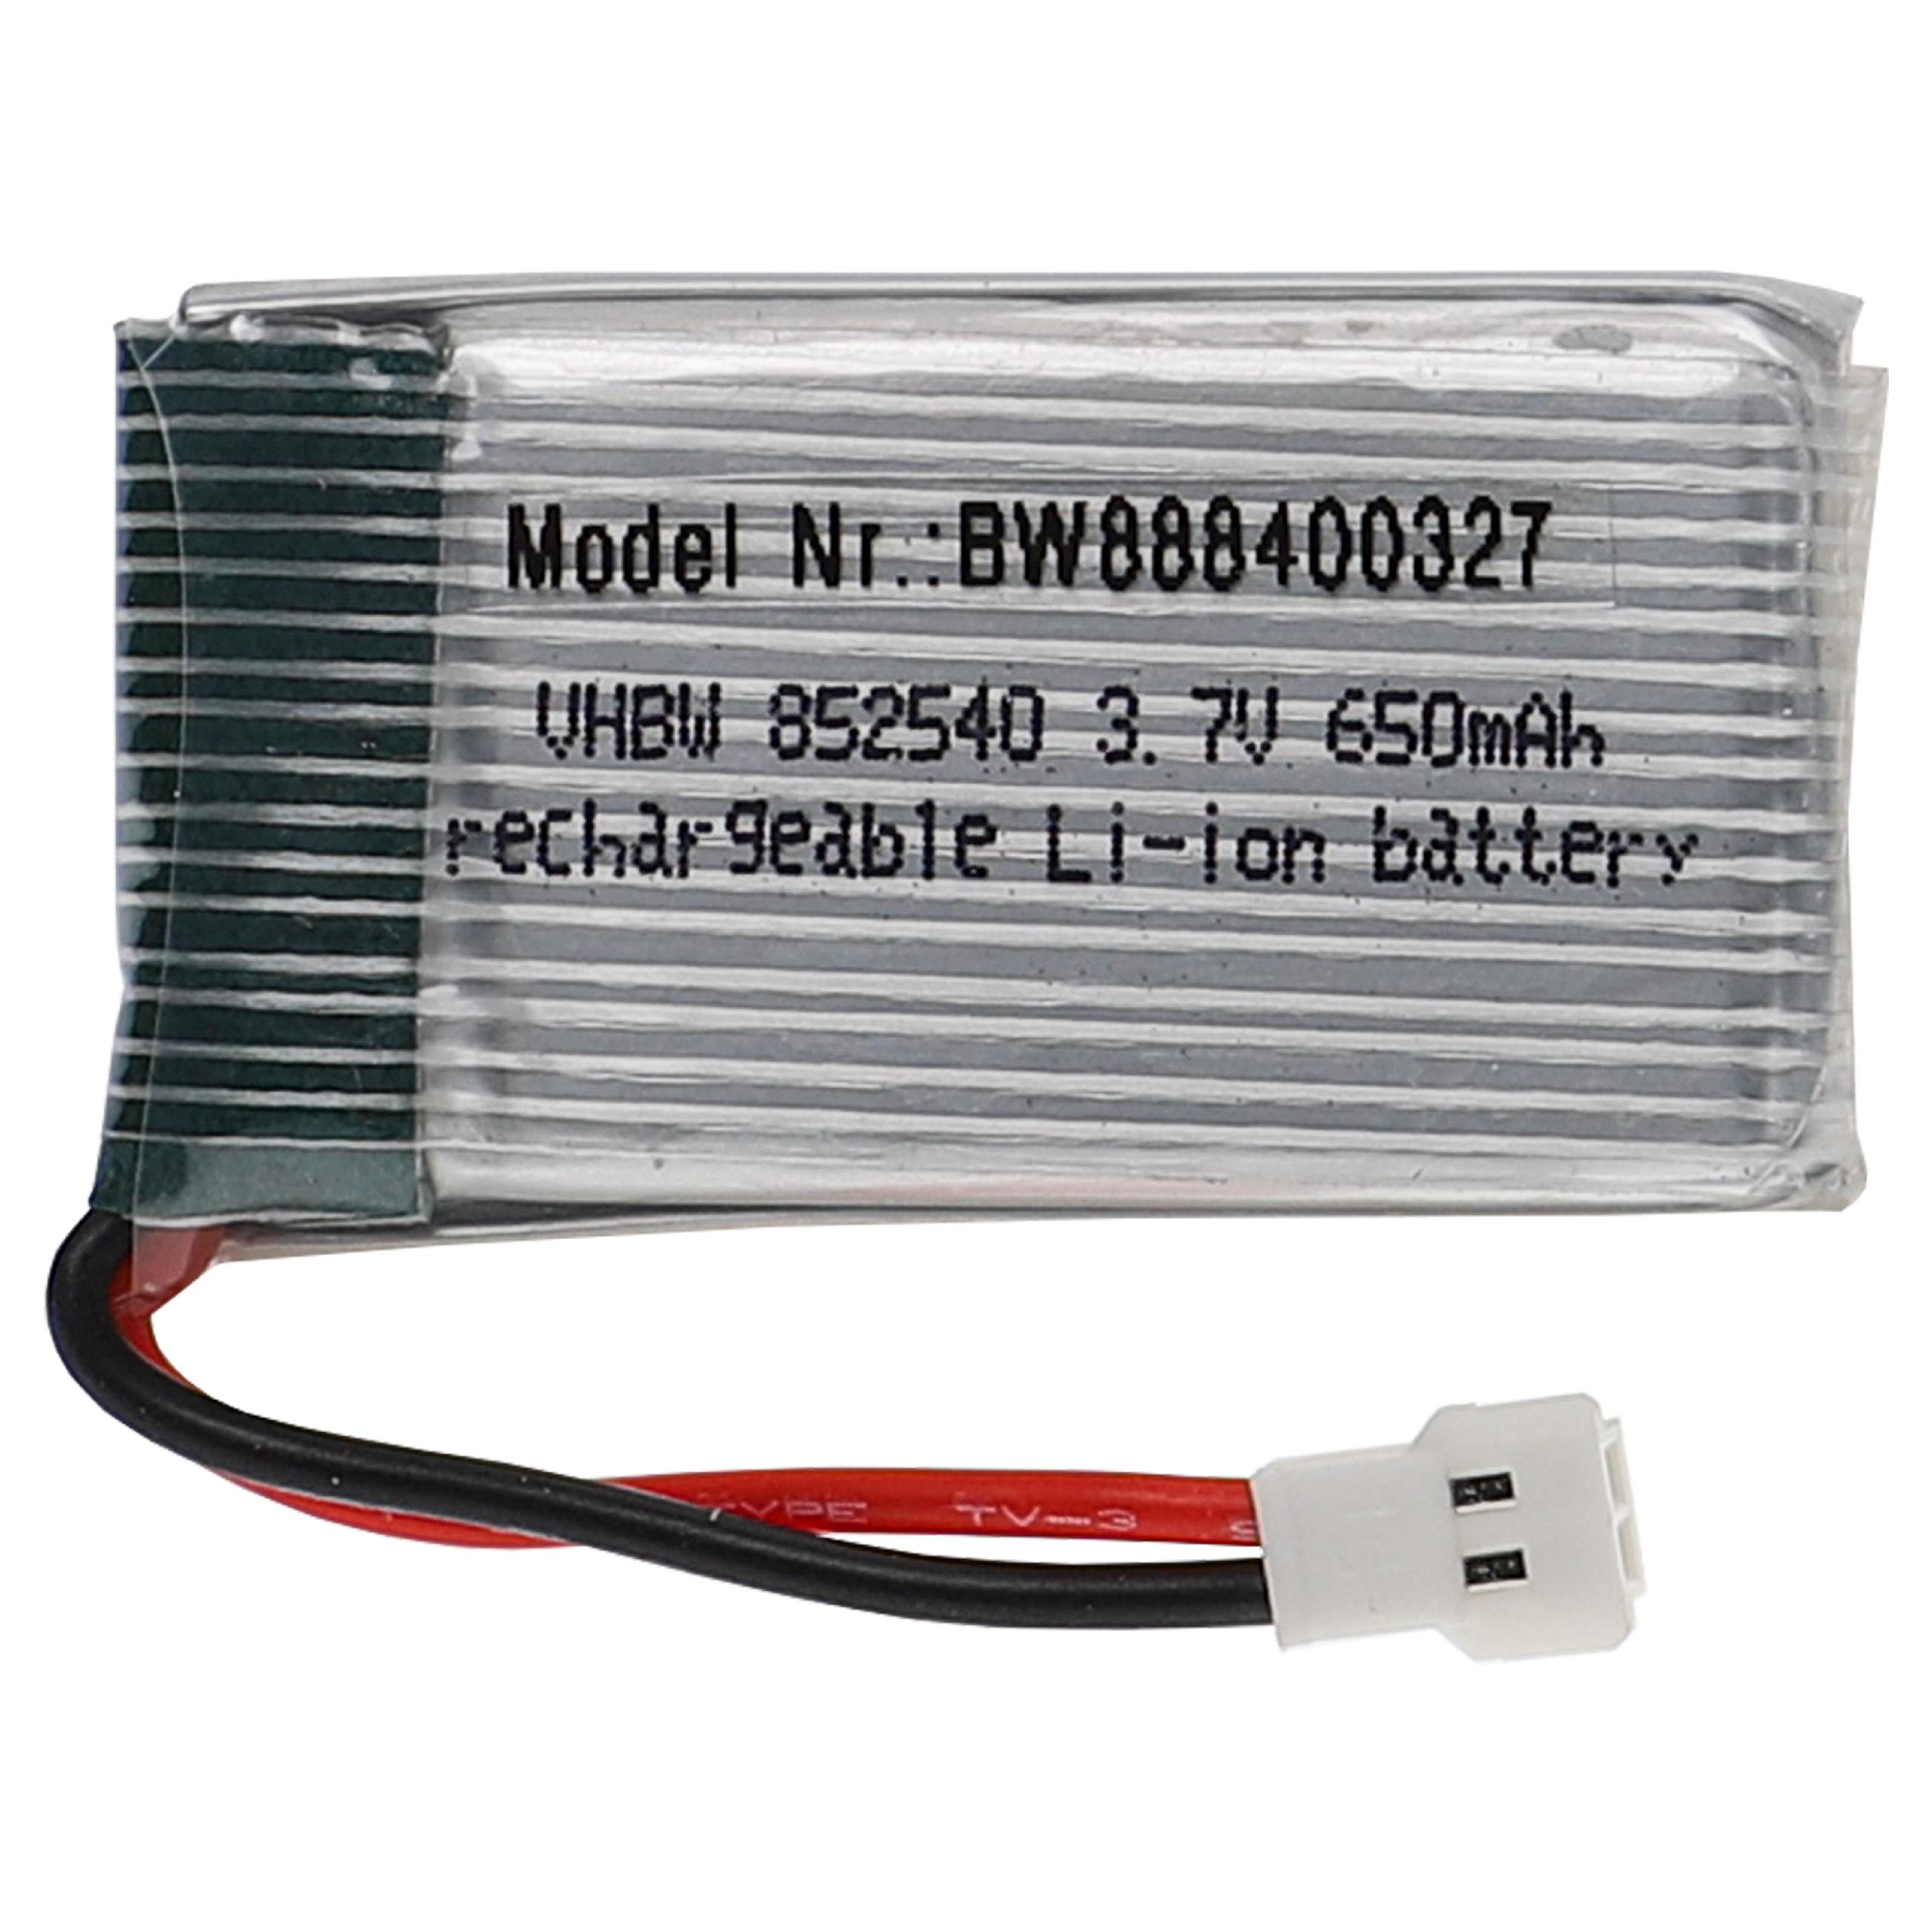 Batería para dispositivos modelismo - 650 mAh 3,7 V Li-poli, XH 2.54 2P